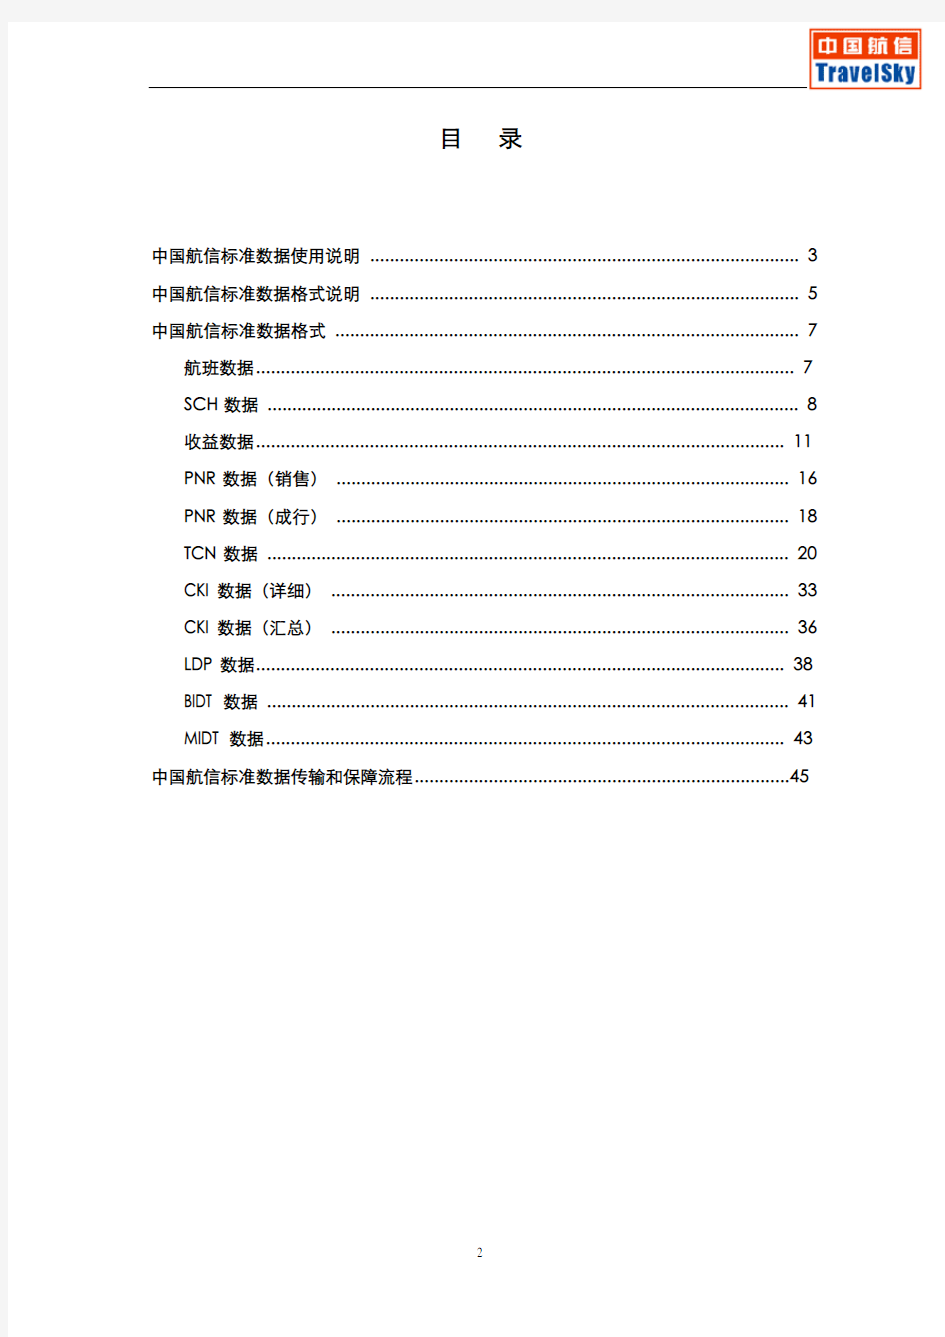 中国航信标准数据格式_20050628